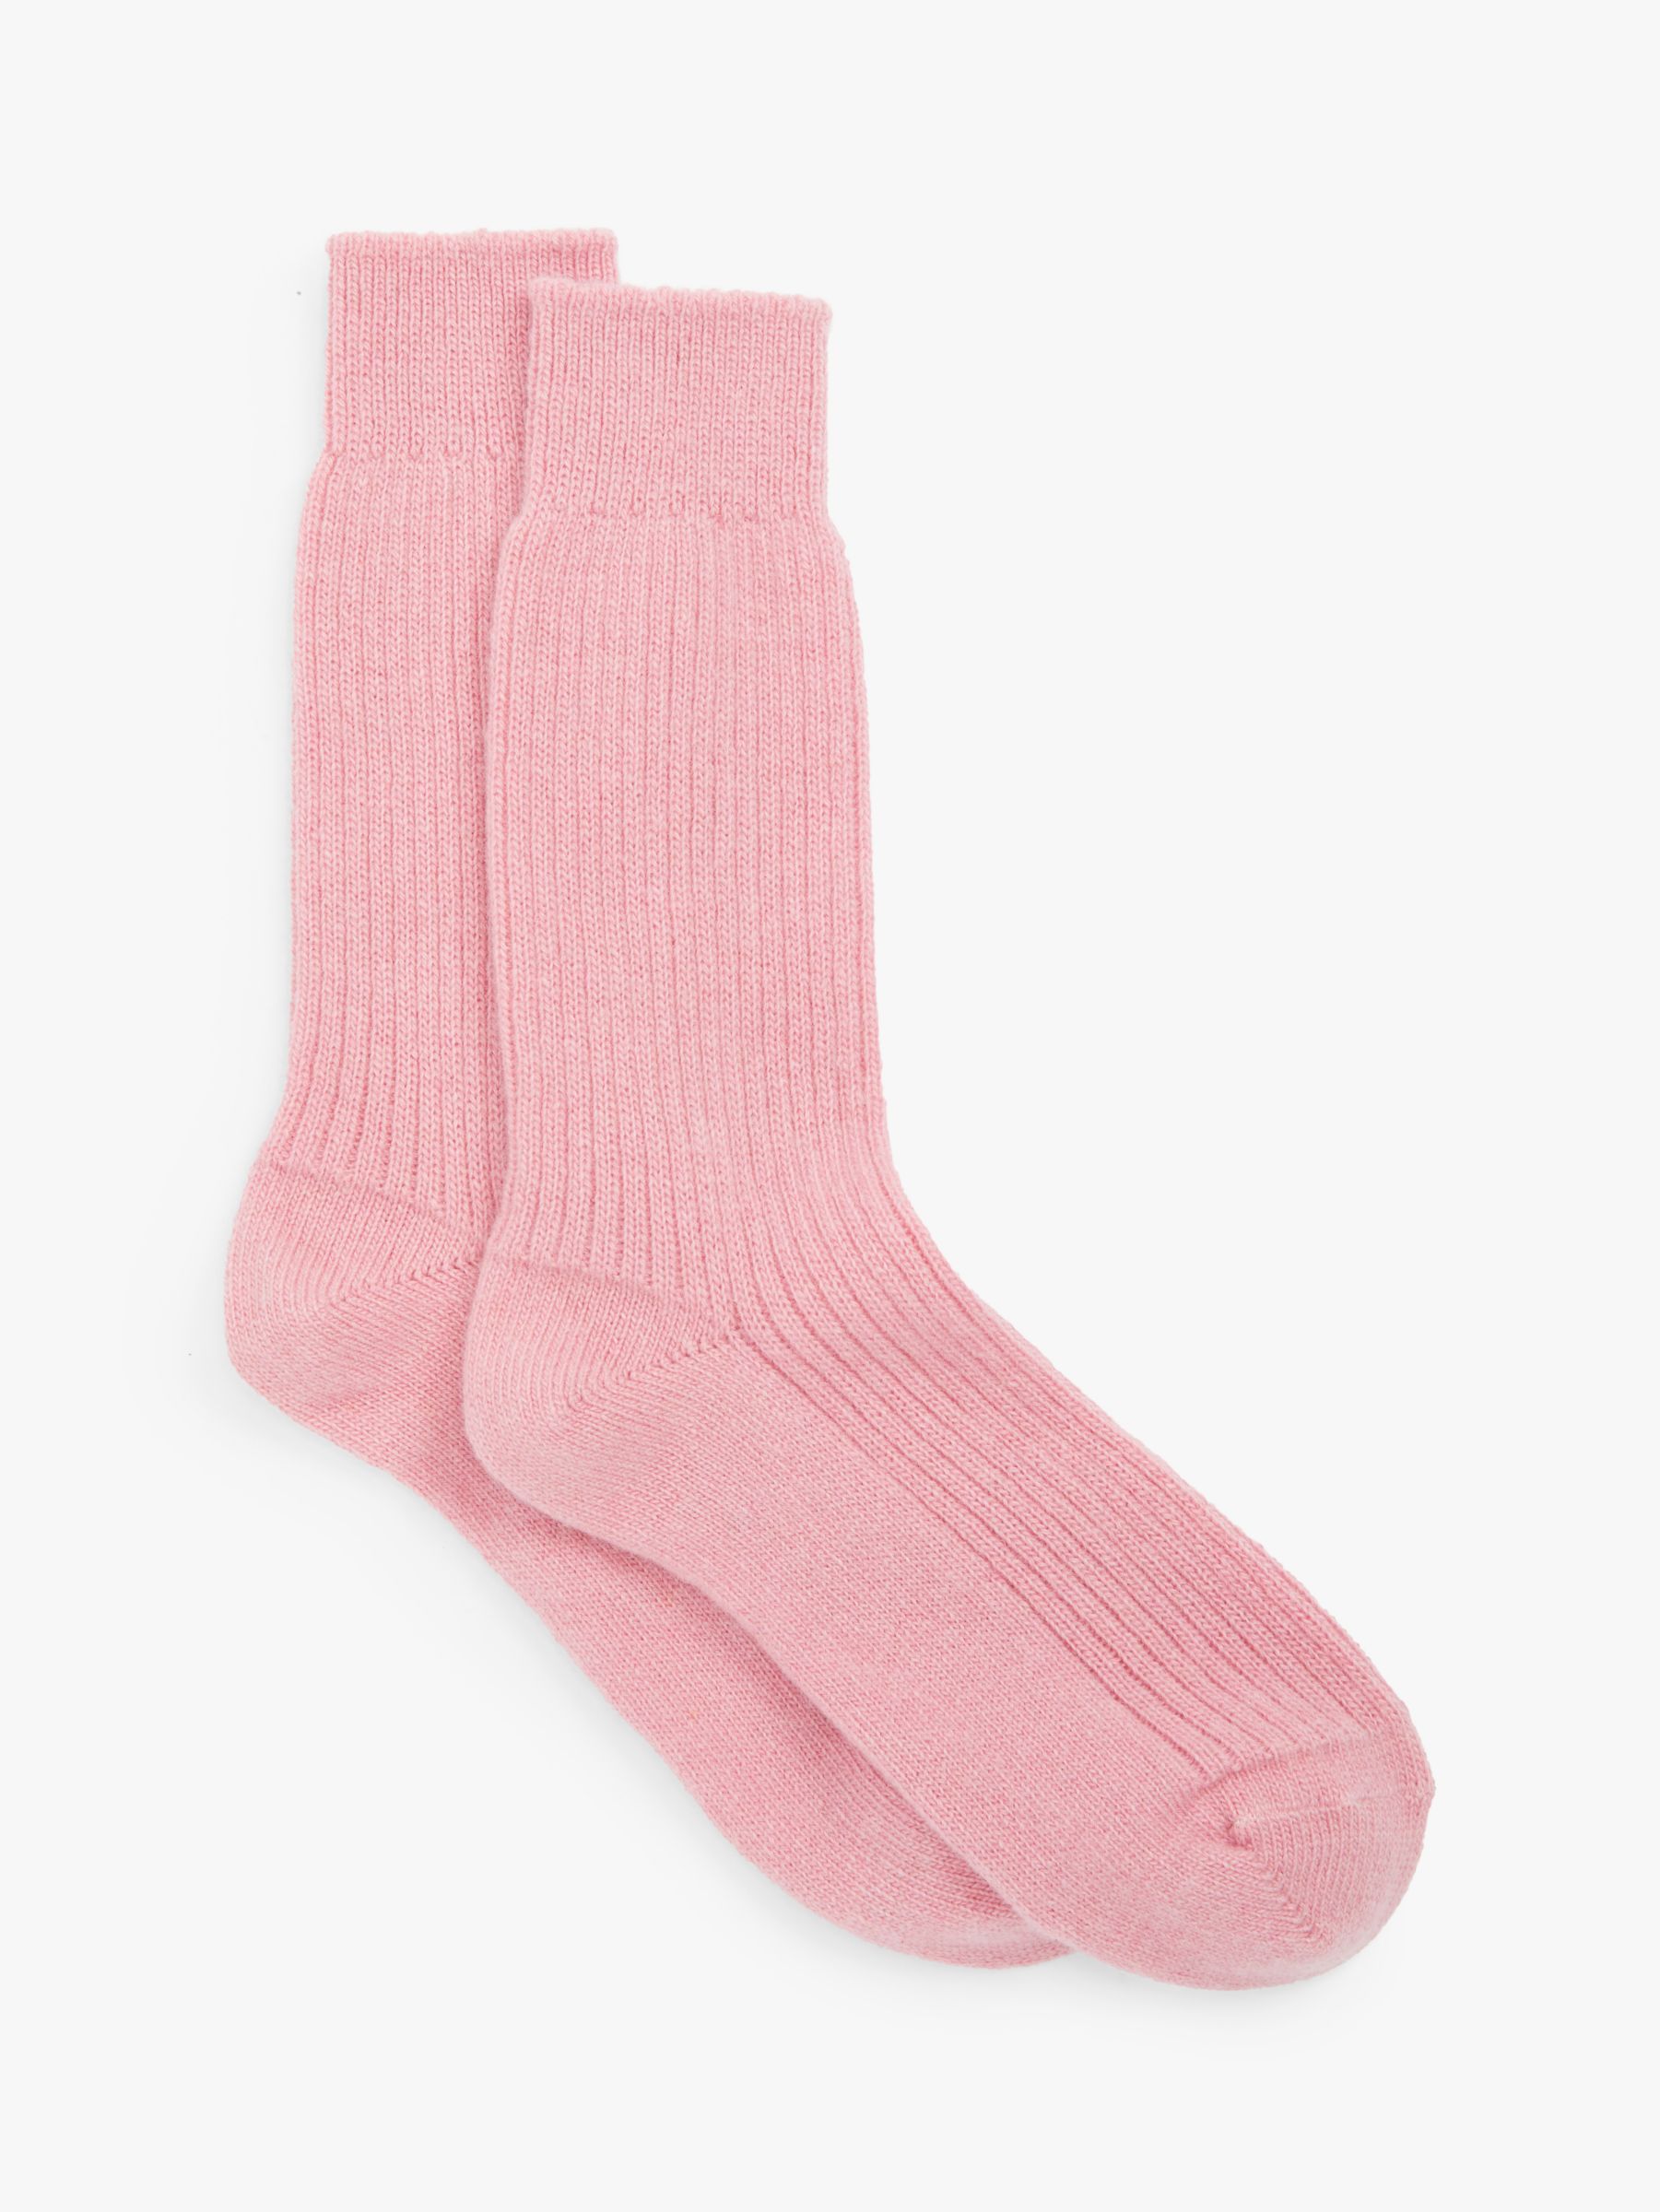 John Lewis Cashmere Bed Ankle Socks, Pink